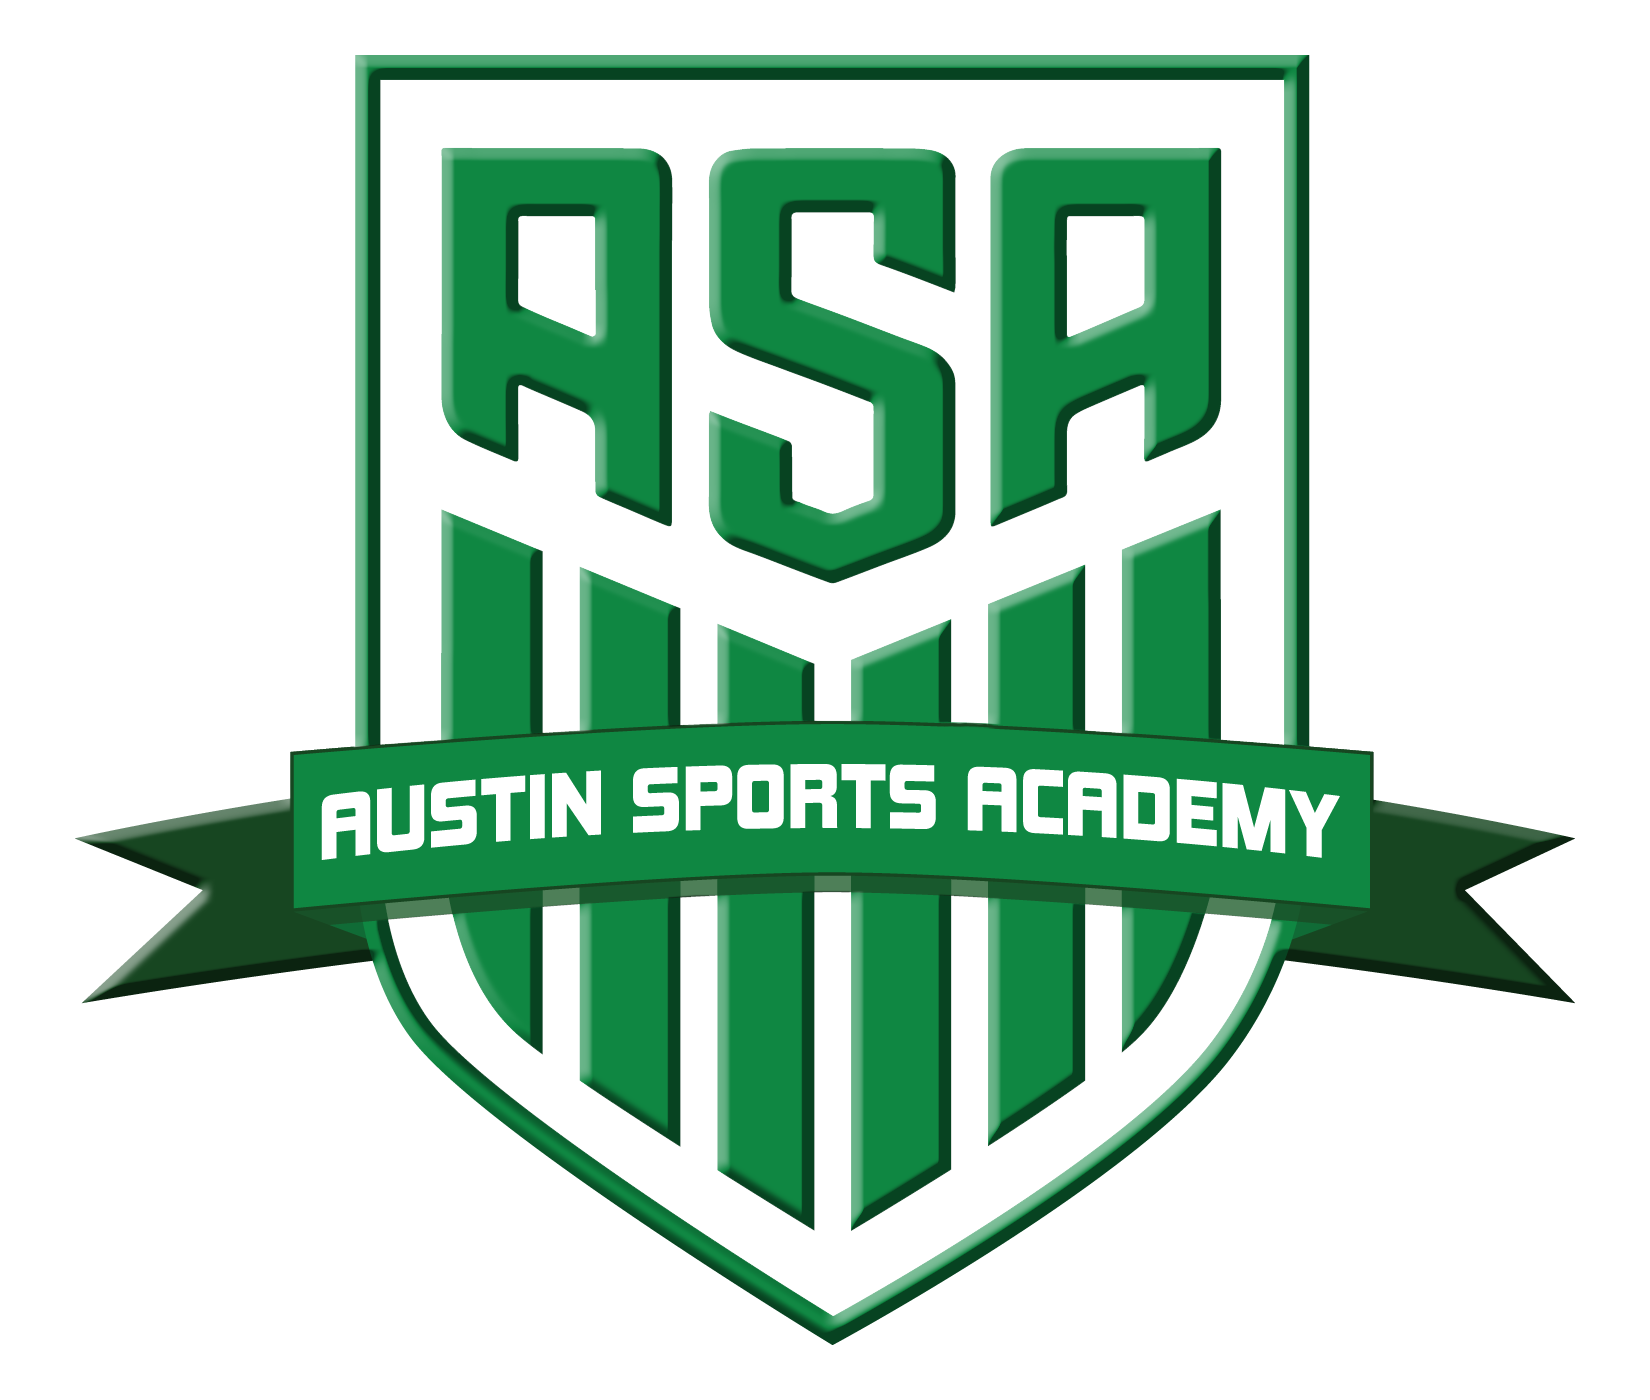 Austin Sports Academy